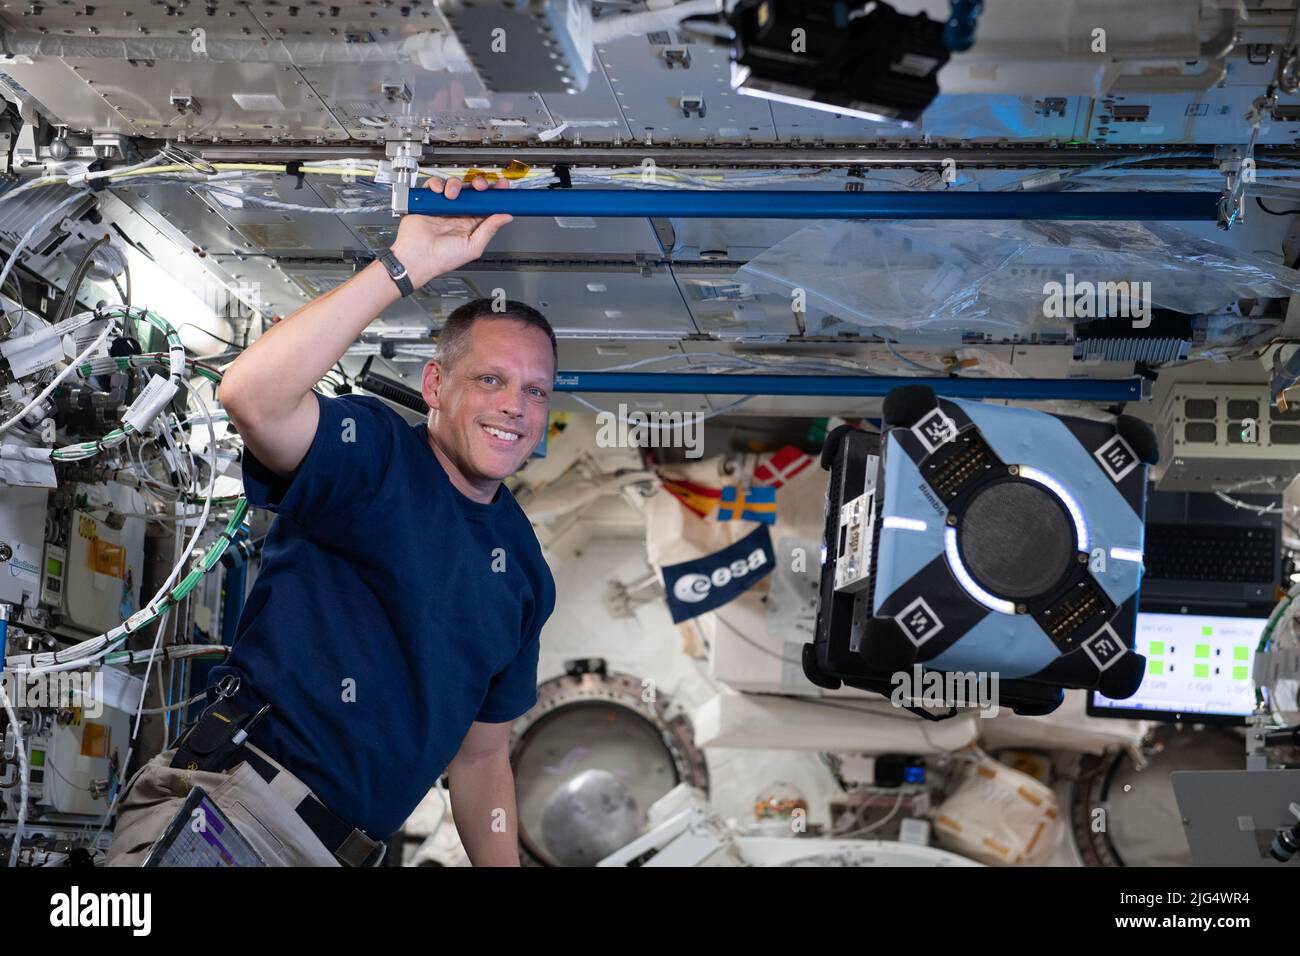 L'ingegnere di volo Bob Hines della NASA Expedition 67 monitora un free-flyer robotico di Astrobee mentre verifica la sua capacità di navigare e manovrare autonomamente all'interno del modulo di laboratorio Kibo utilizzando la tecnologia smartphone a bordo della Stazione spaziale Internazionale, 24 giugno 2022 a Earth Orbit. Foto Stock